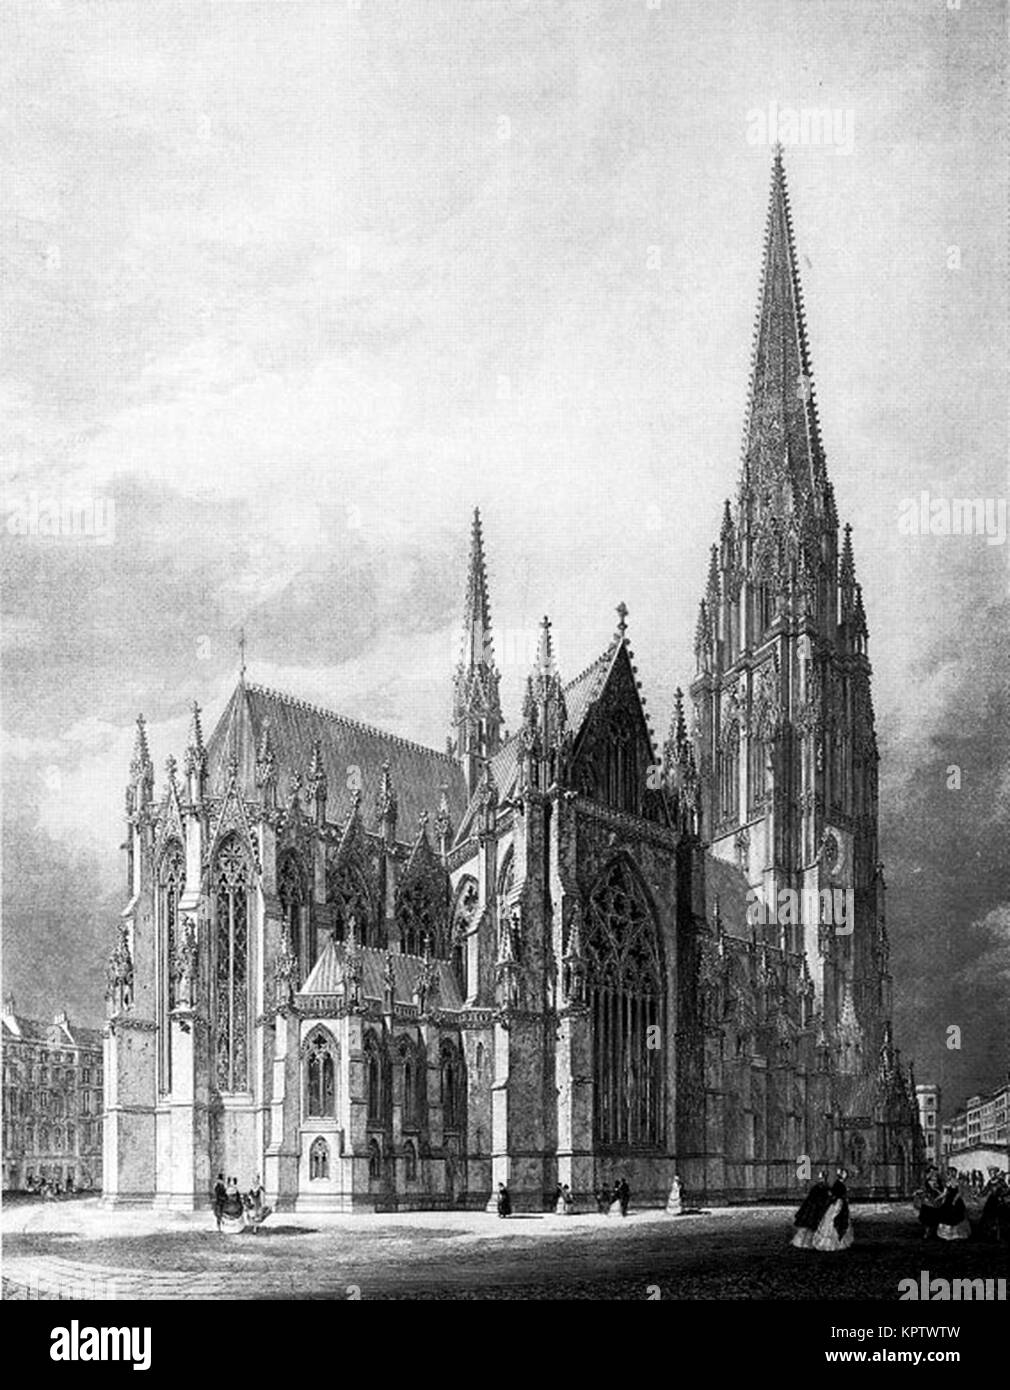 Nikolaikirche, Hambourg, Allemagne (1845-80), bombardée pendant la Seconde Guerre mondiale, et aujourd'une ruine Banque D'Images